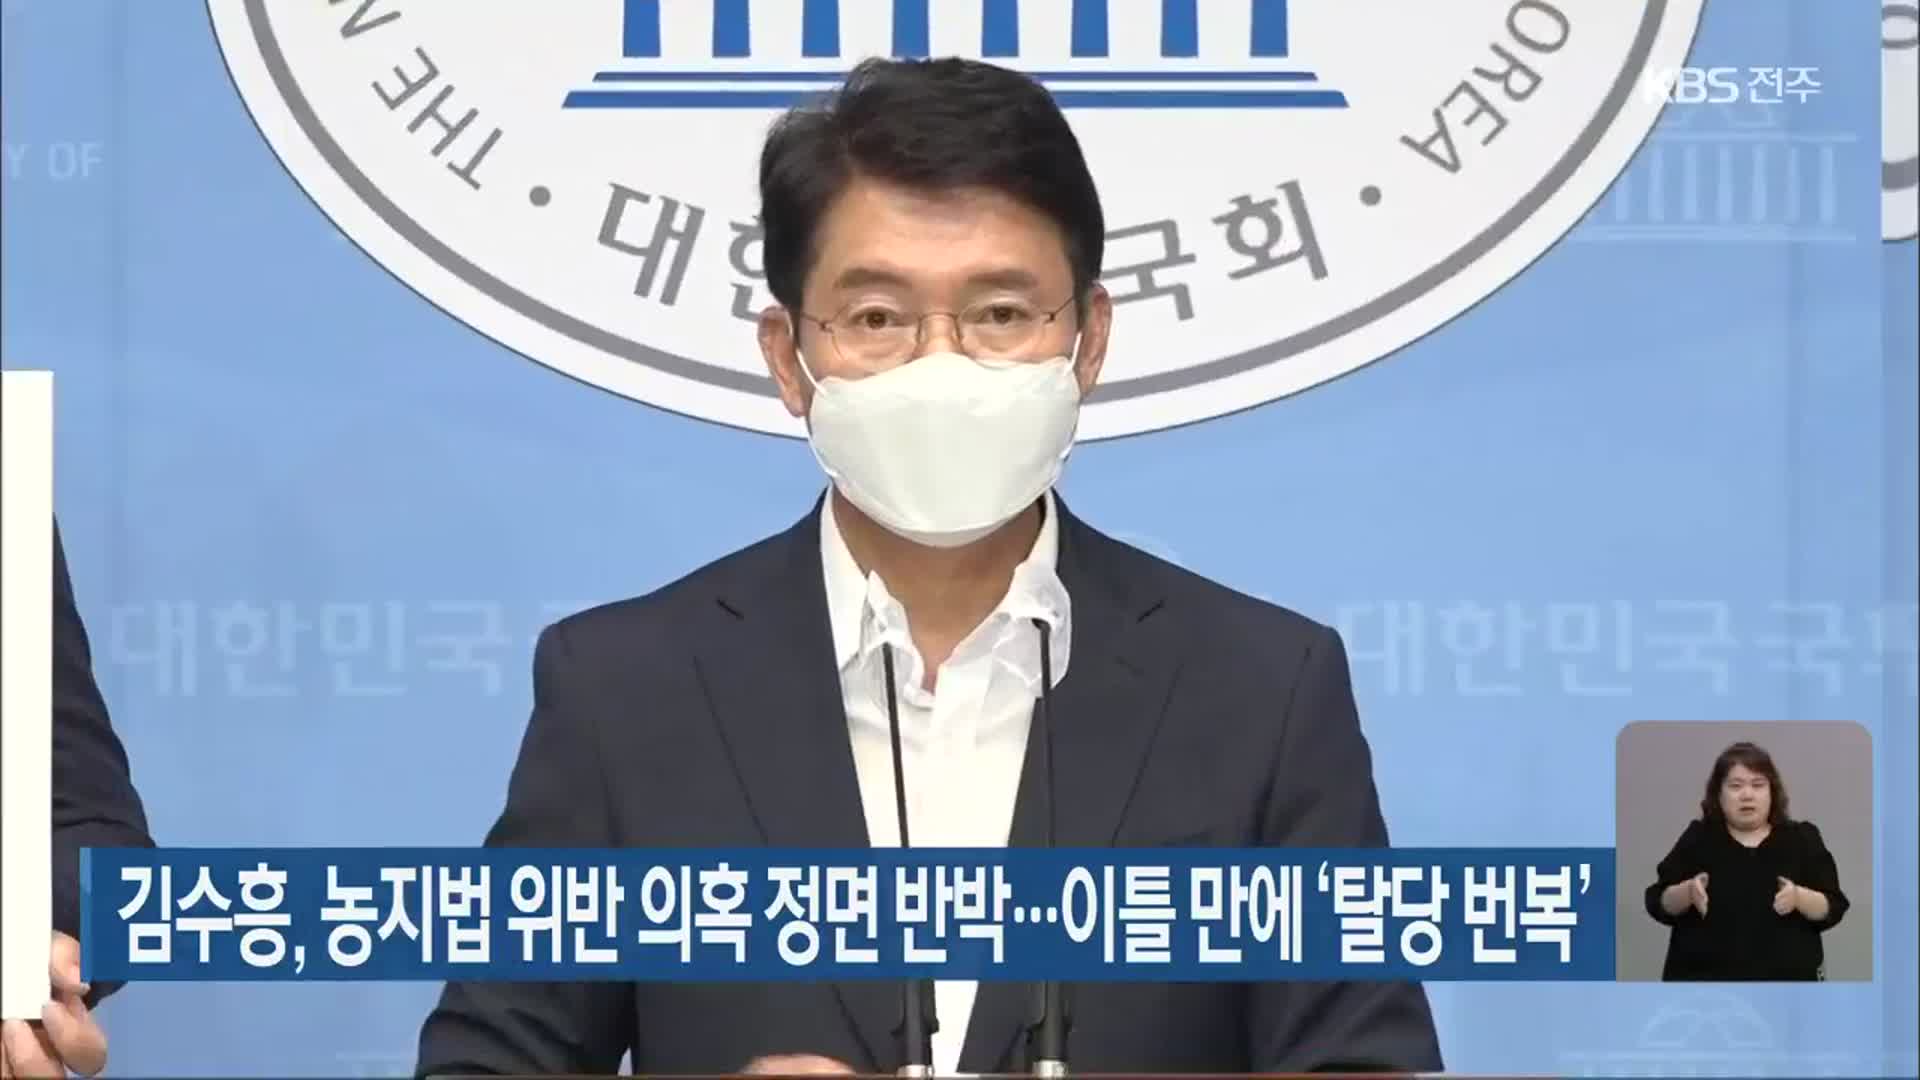 김수흥, 농지법 위반 의혹 정면 반박…이틀 만에 ‘탈당 번복’